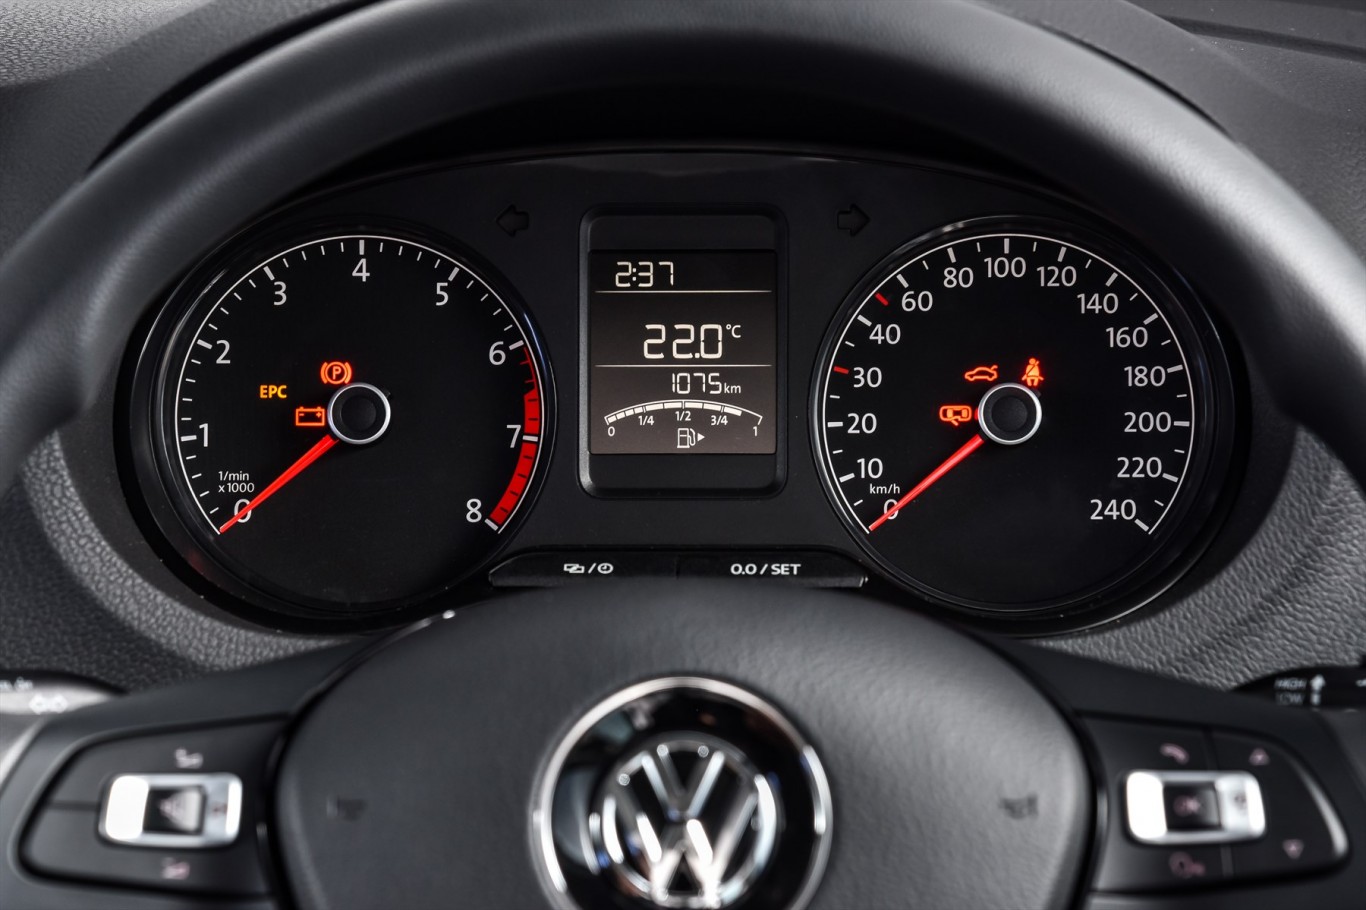 Volkswagen is “Moving Rwanda”